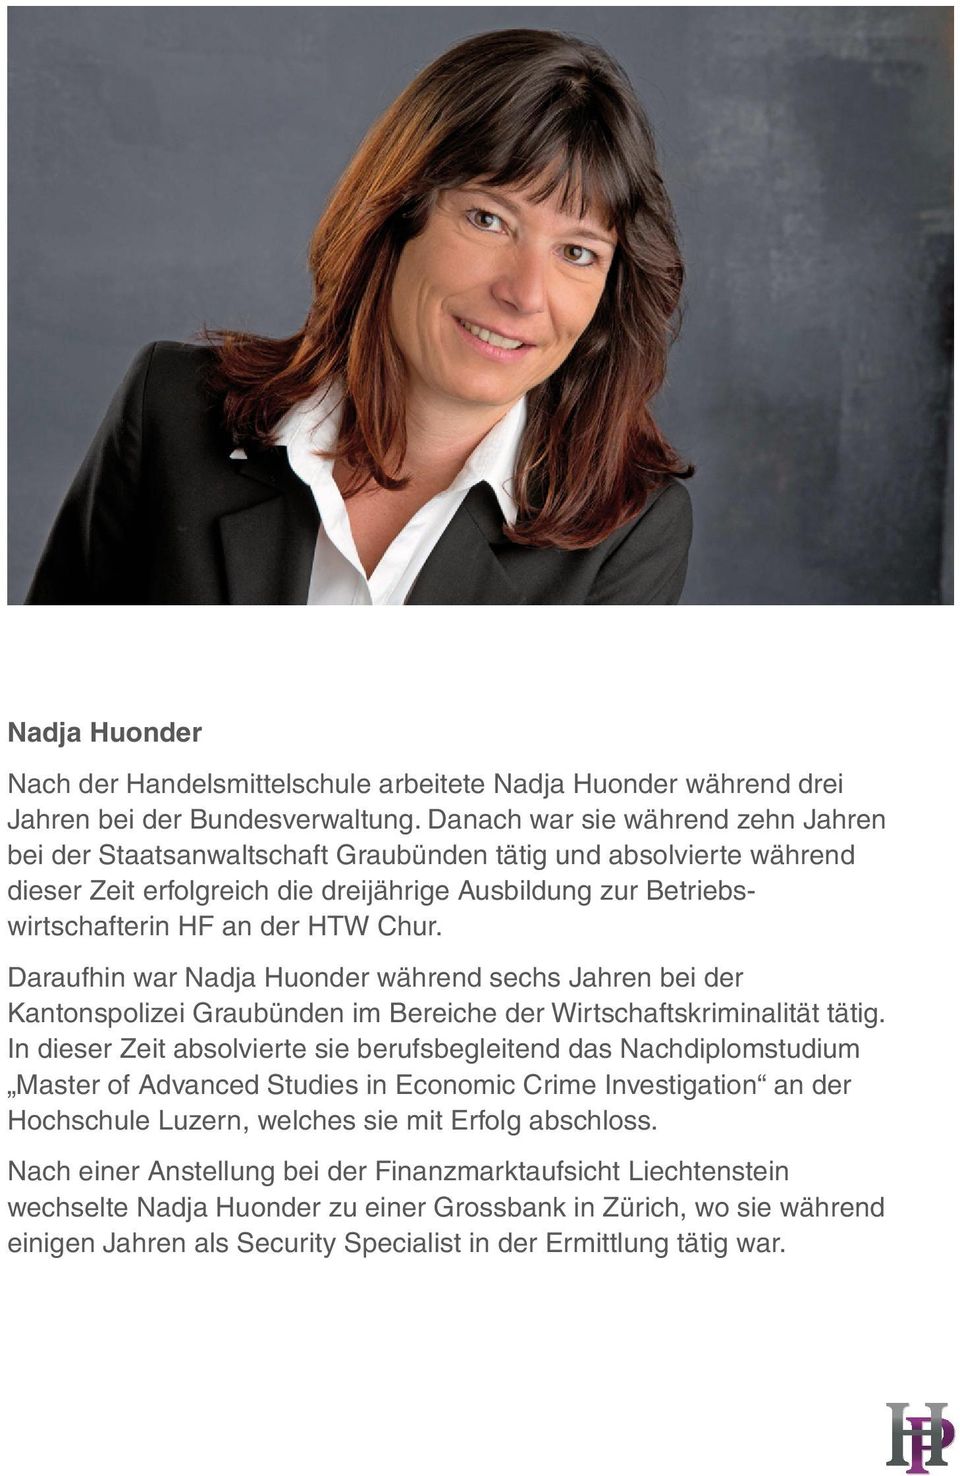 Daraufhin war Nadja Huonder während sechs Jahren bei der Kantonspolizei Graubünden im Bereiche der Wirtschaftskriminalität tätig.